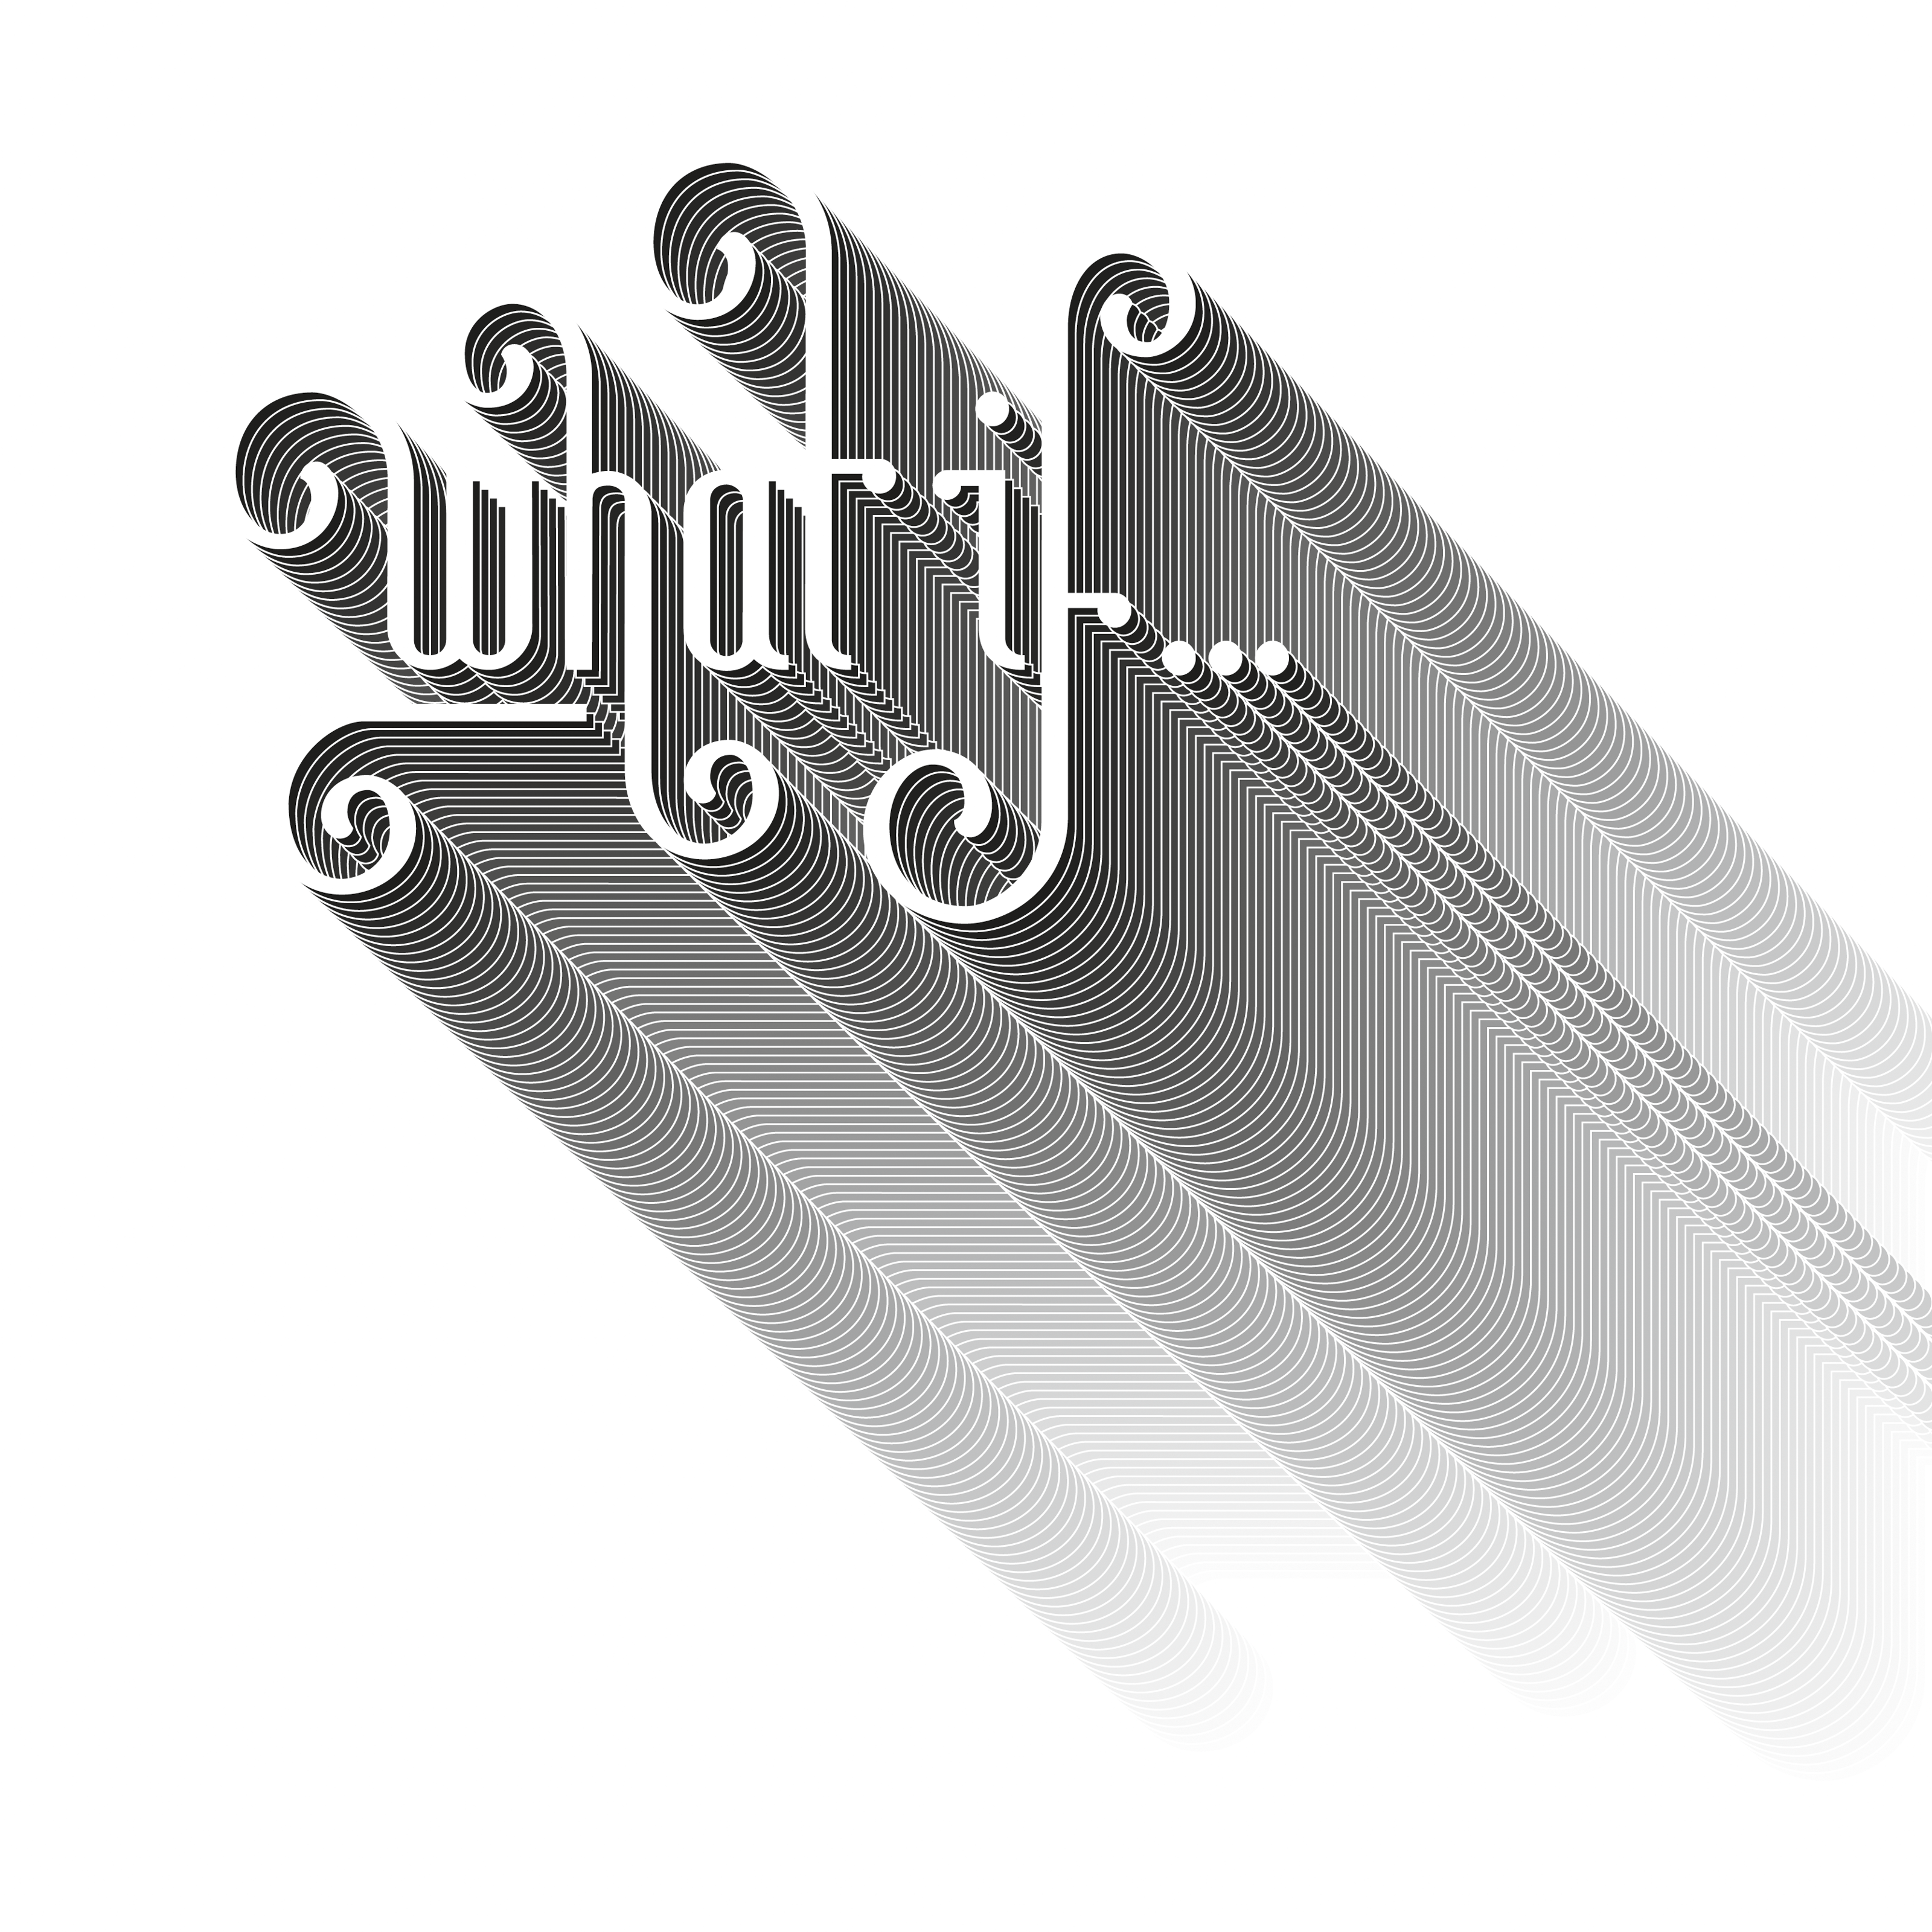 Ein Schriftzug (schwarz auf weiß) mit dem englischen Wortlaut: What if (Was ist, wenn).